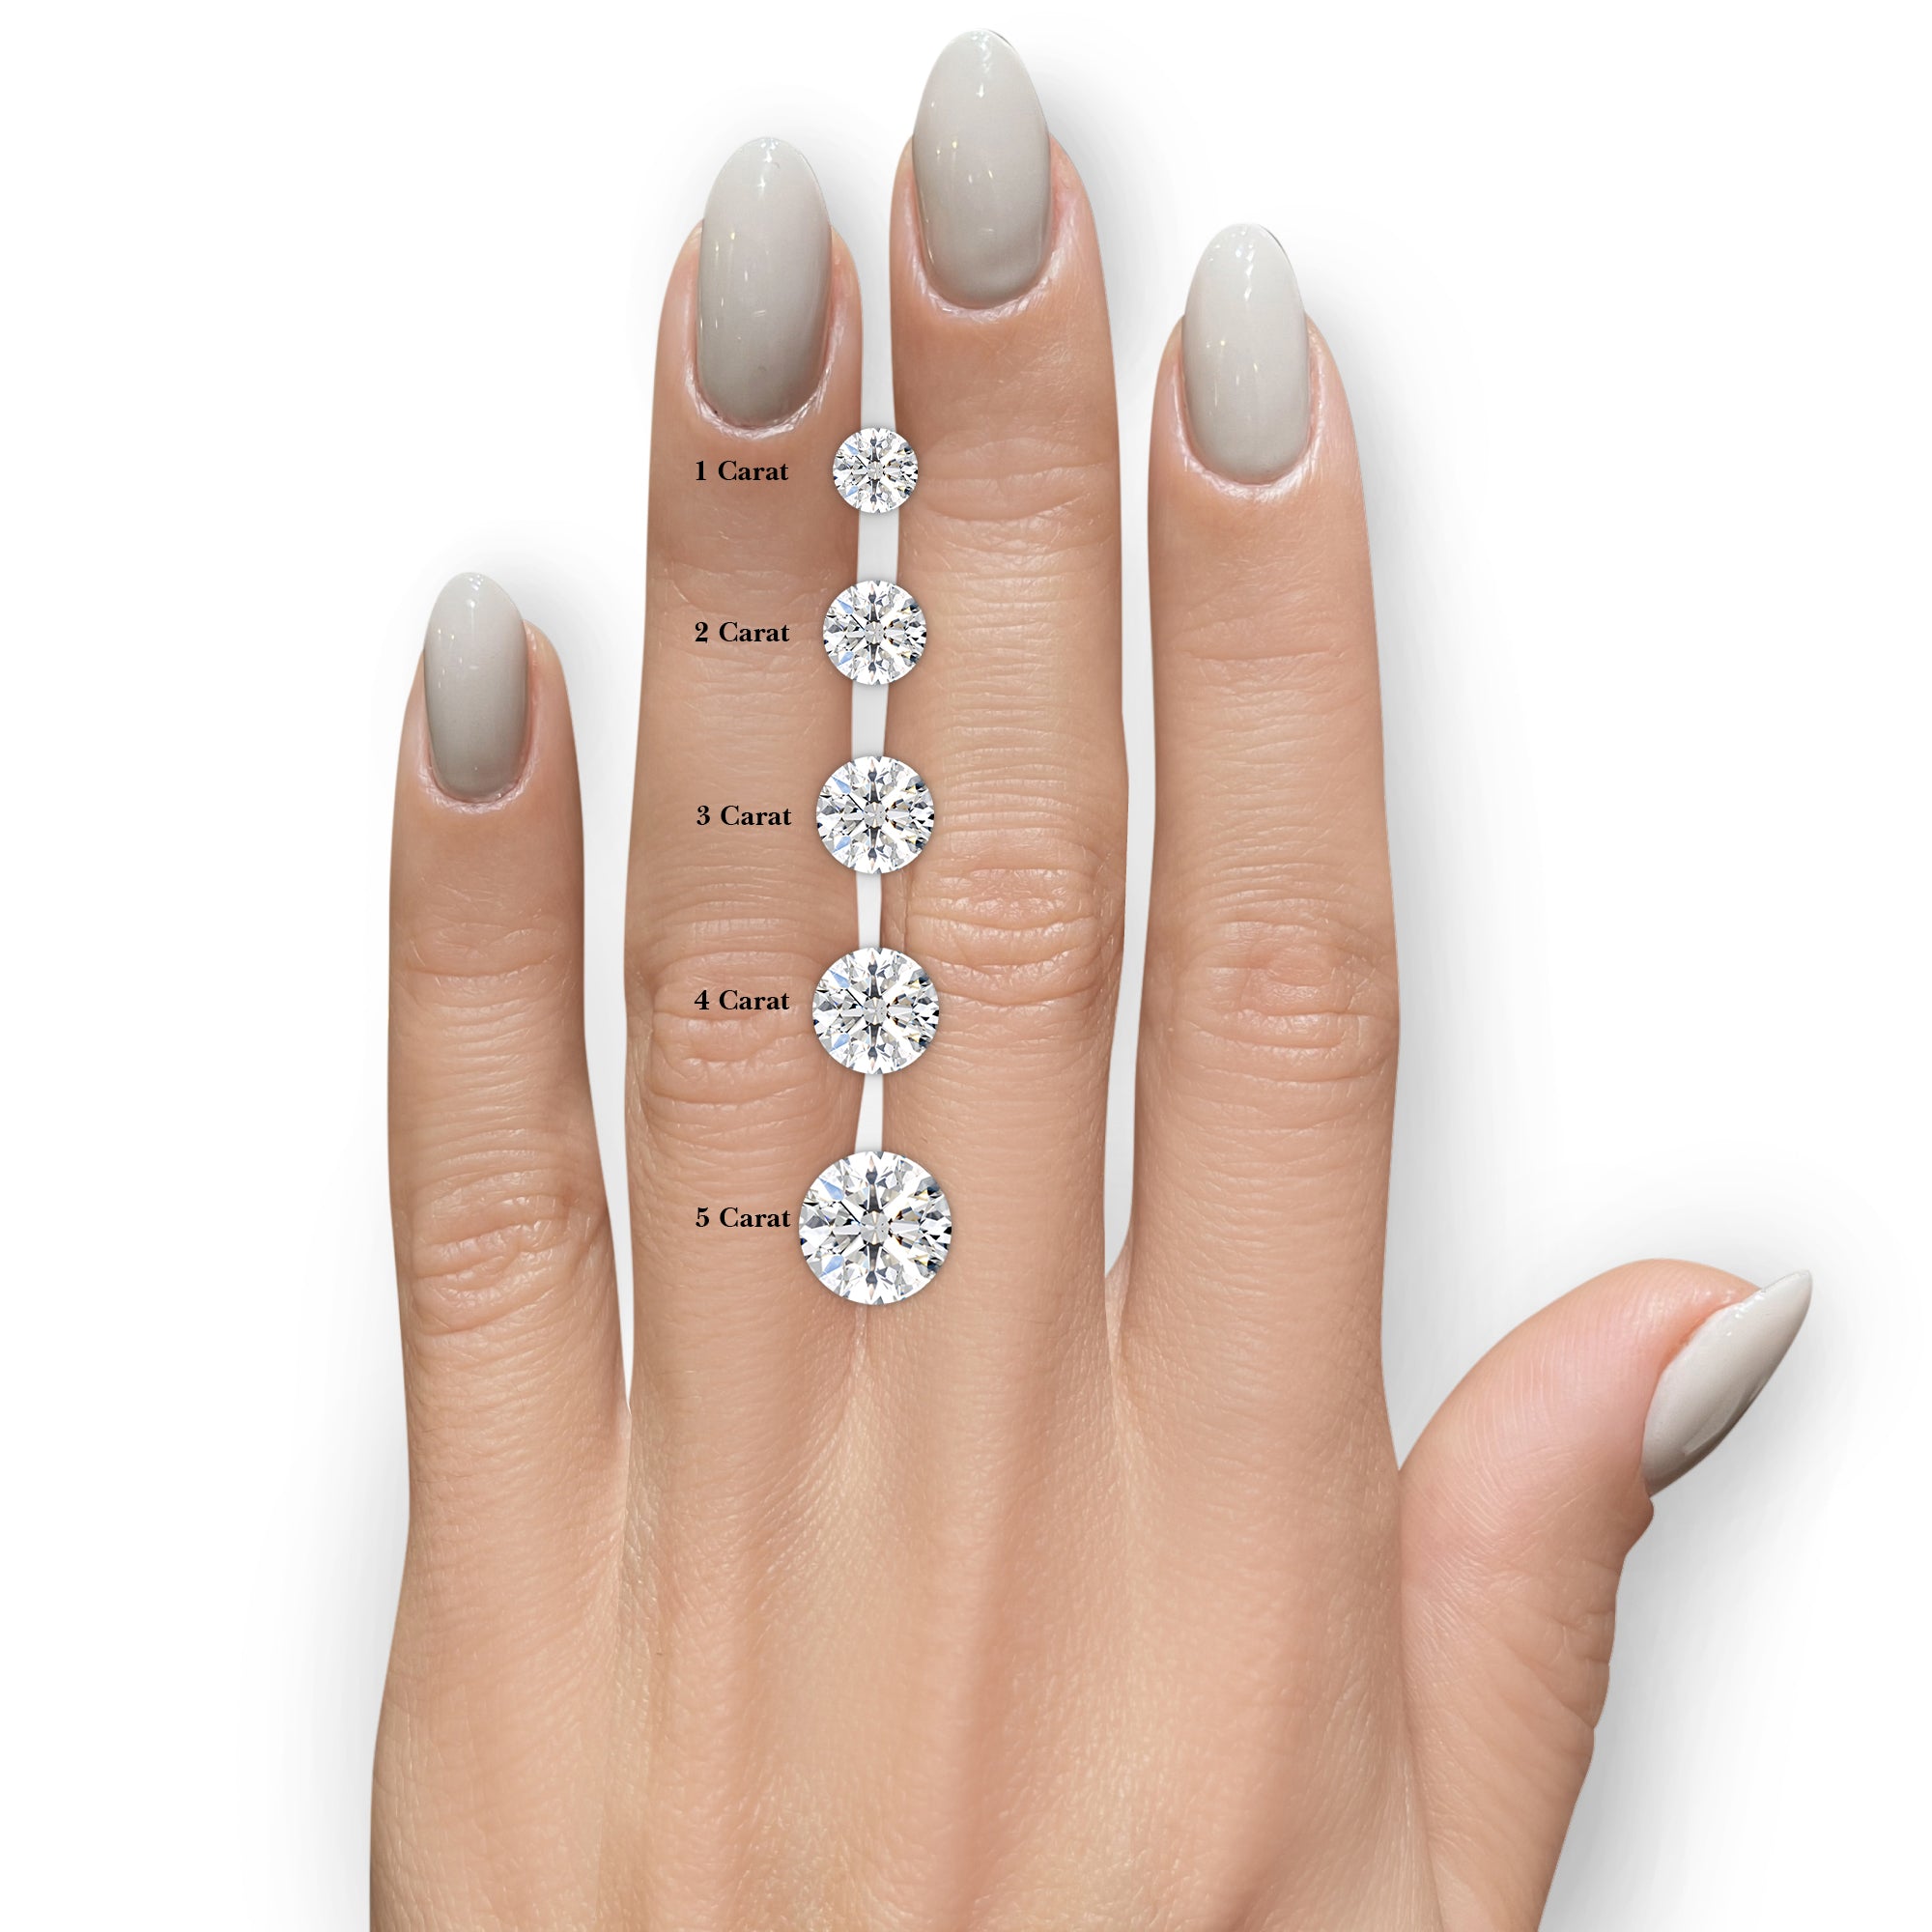 Alison Diamond Engagement Ring -18K White Gold